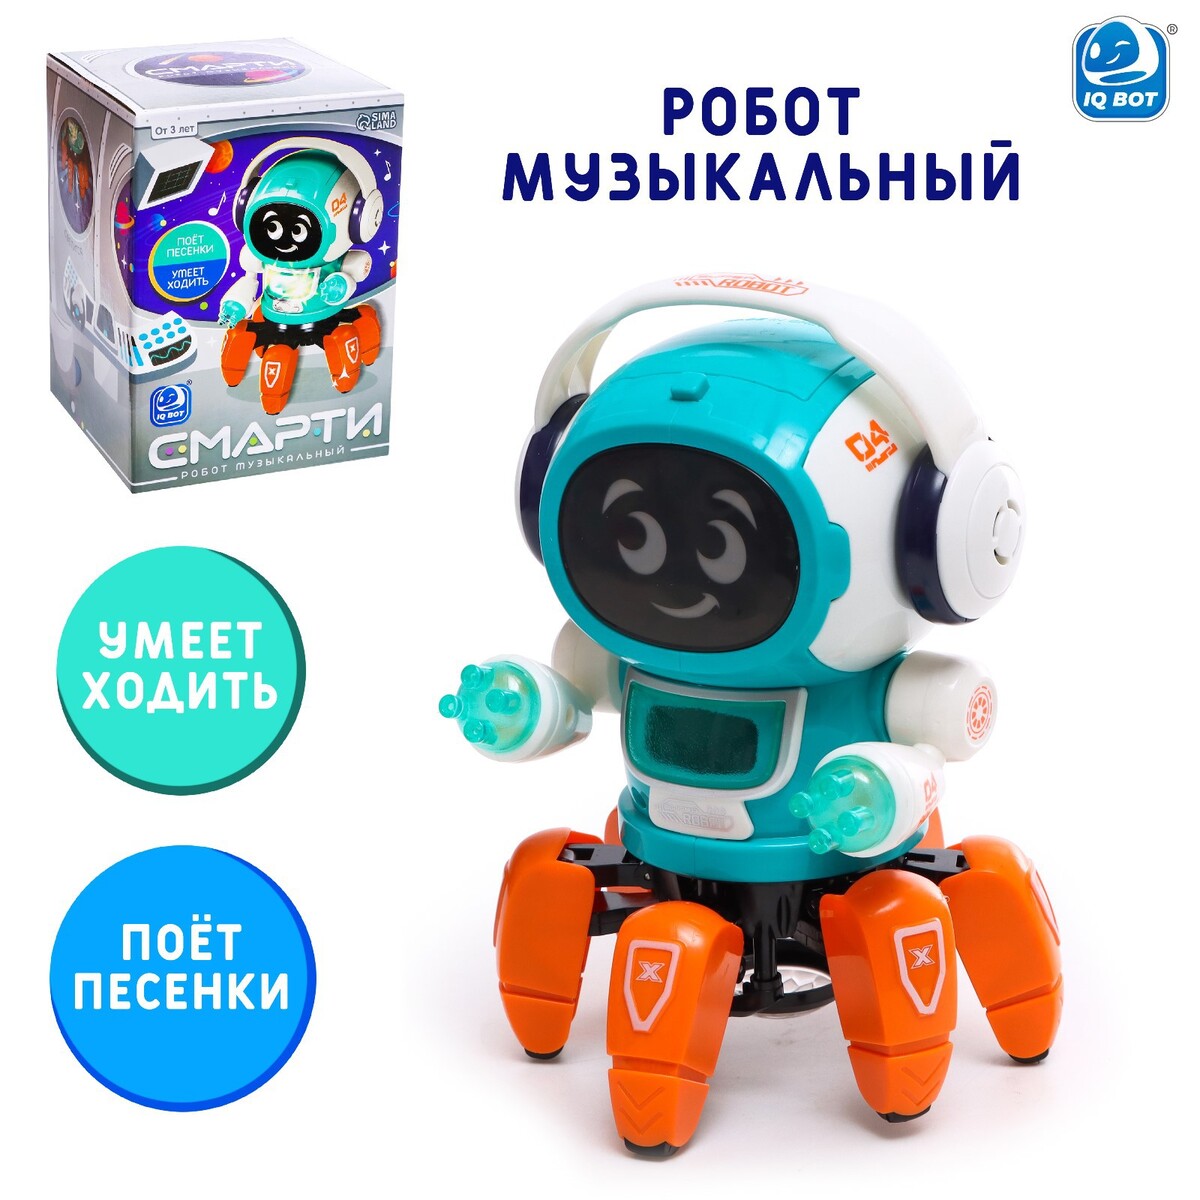 Робот музыкальный робот iq bot музыкальный вилли звук свет ходит оранжевый sl 05925c